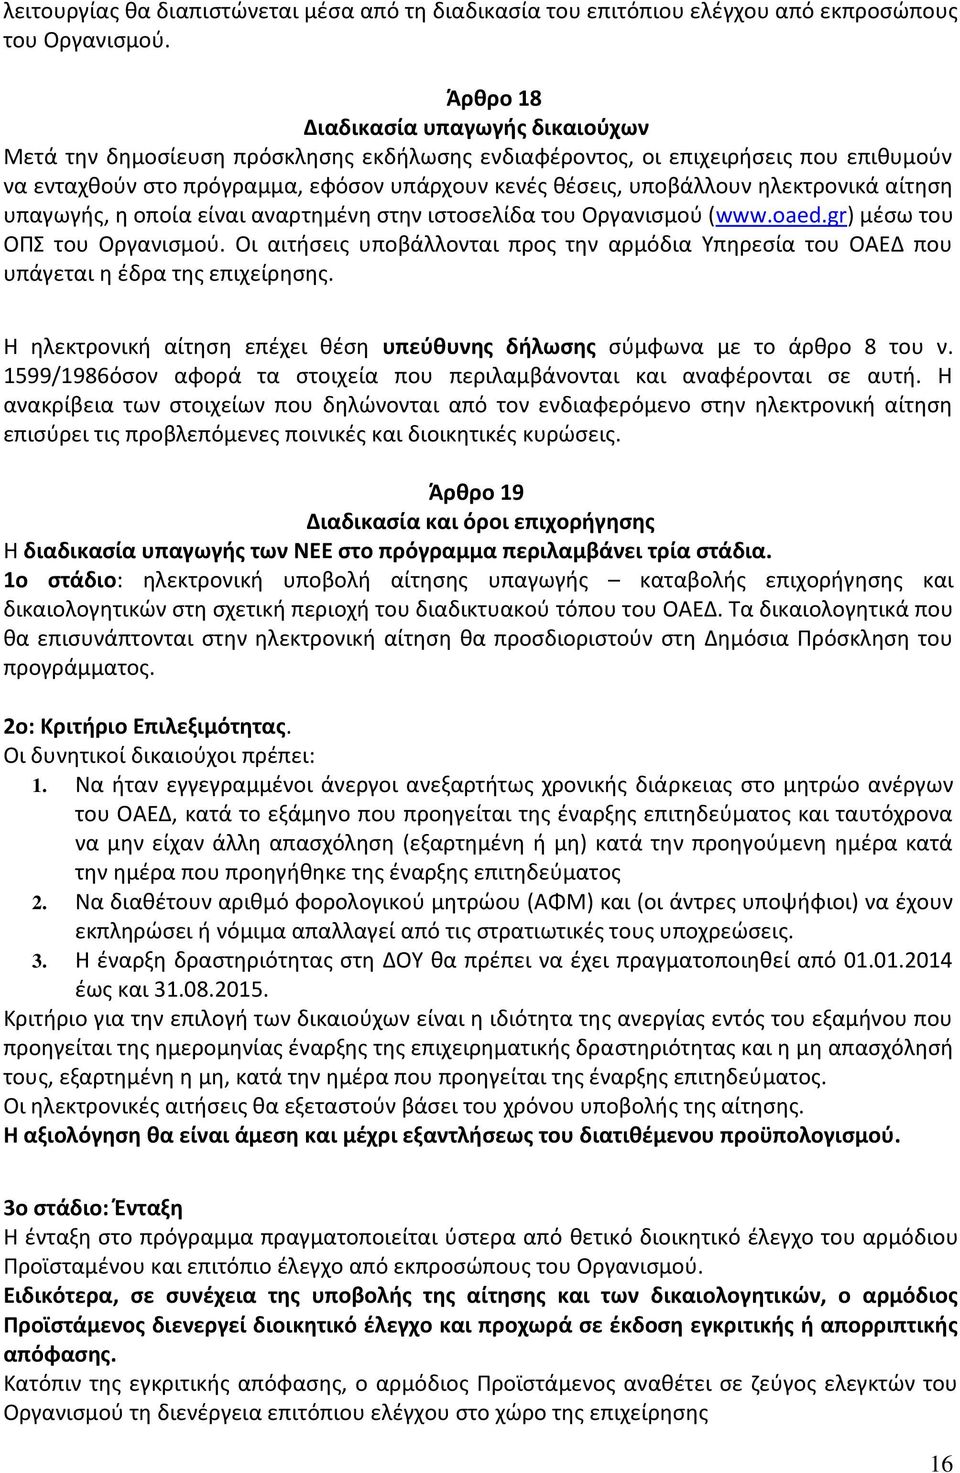 ηλεκτρονικά αίτηση υπαγωγής, η οποία είναι αναρτημένη στην ιστοσελίδα του Οργανισμού (www.oaed.gr) μέσω του ΟΠΣ του Οργανισμού.